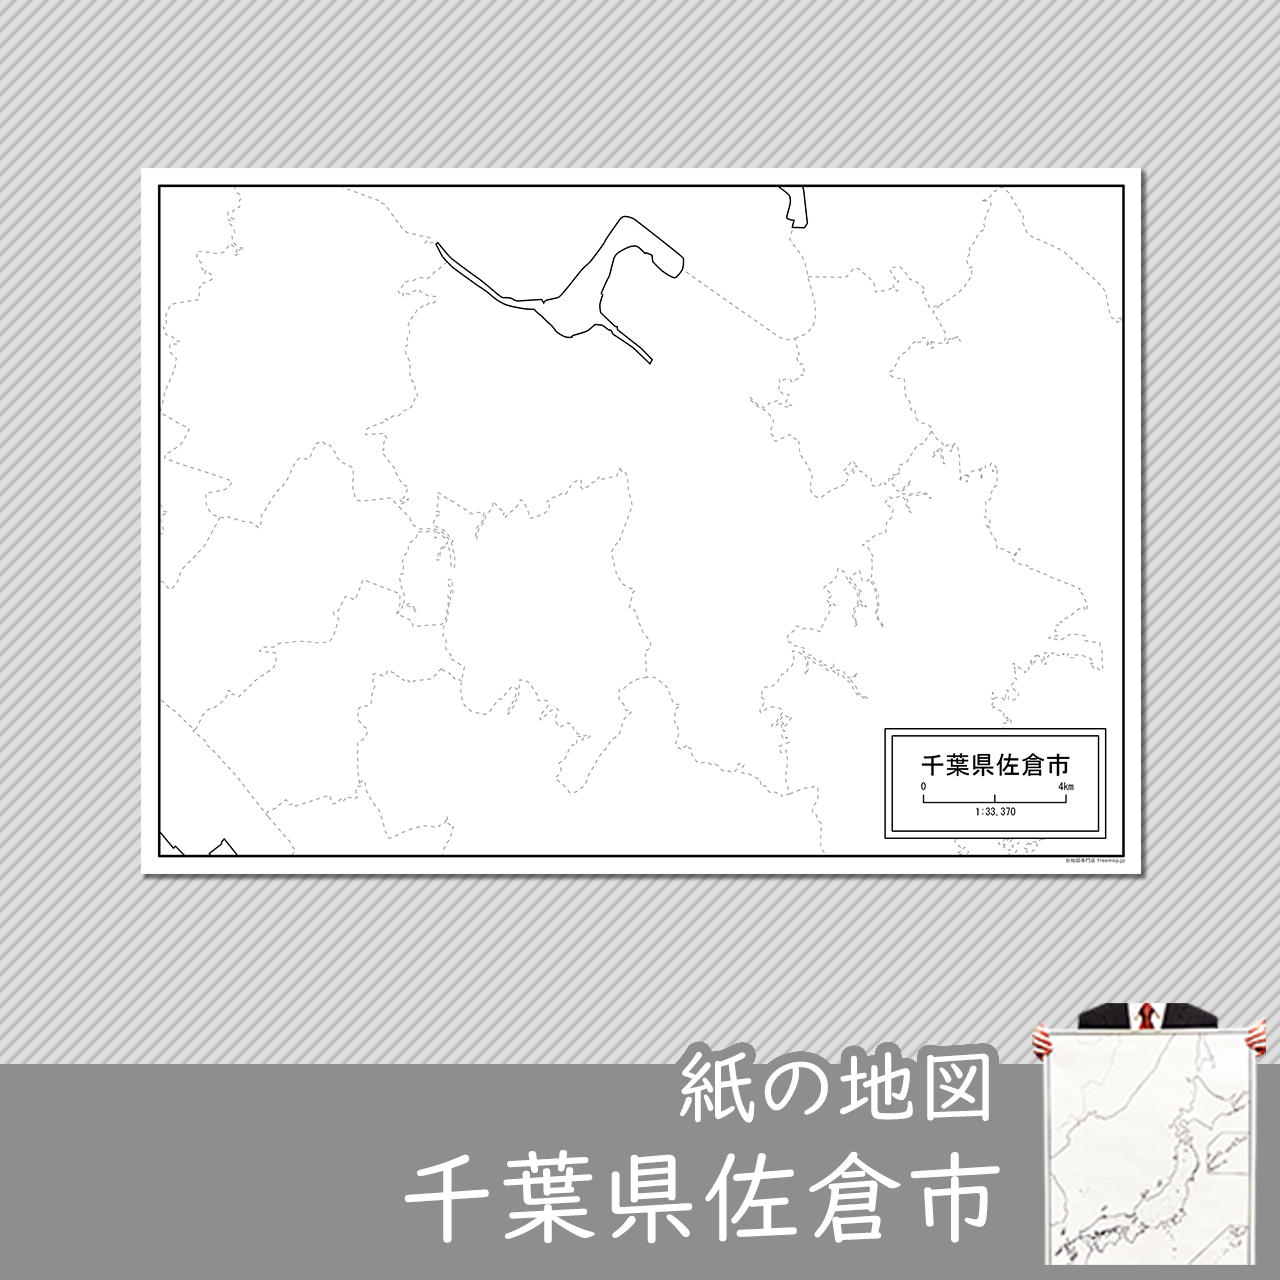 佐倉市の紙の白地図のサムネイル